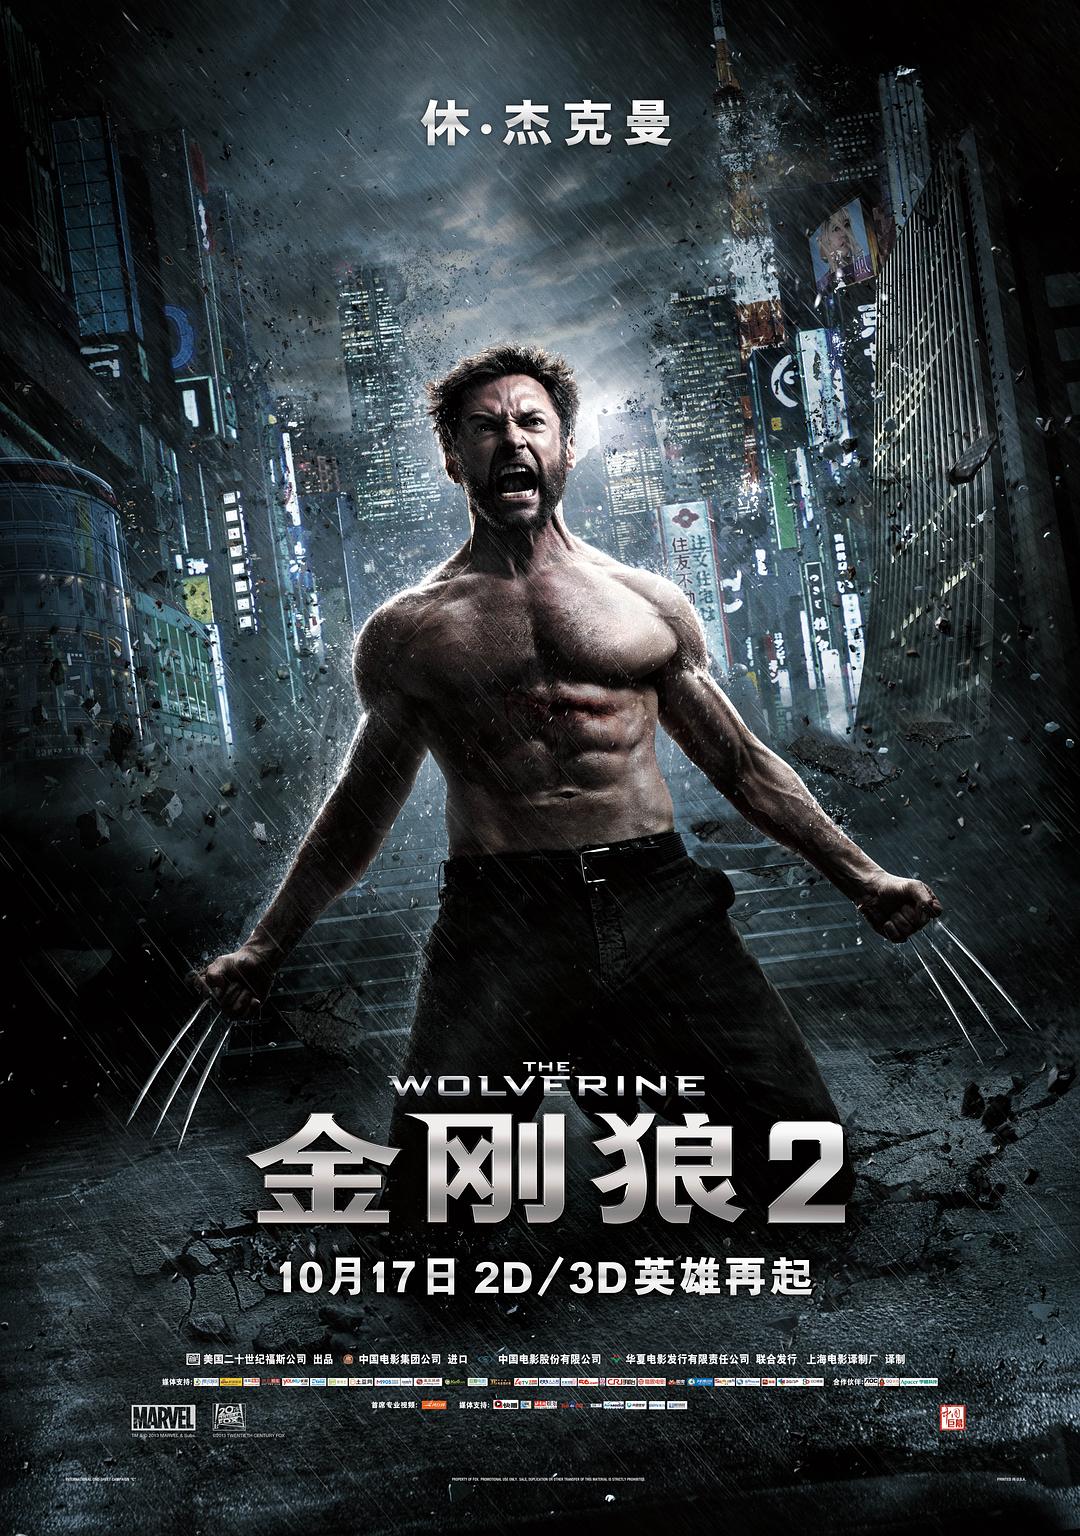 [金刚狼2 The Wolverine 2013][3D][DIY国语 简繁特效中字][CHDBits][45.56GB]-1.jpg